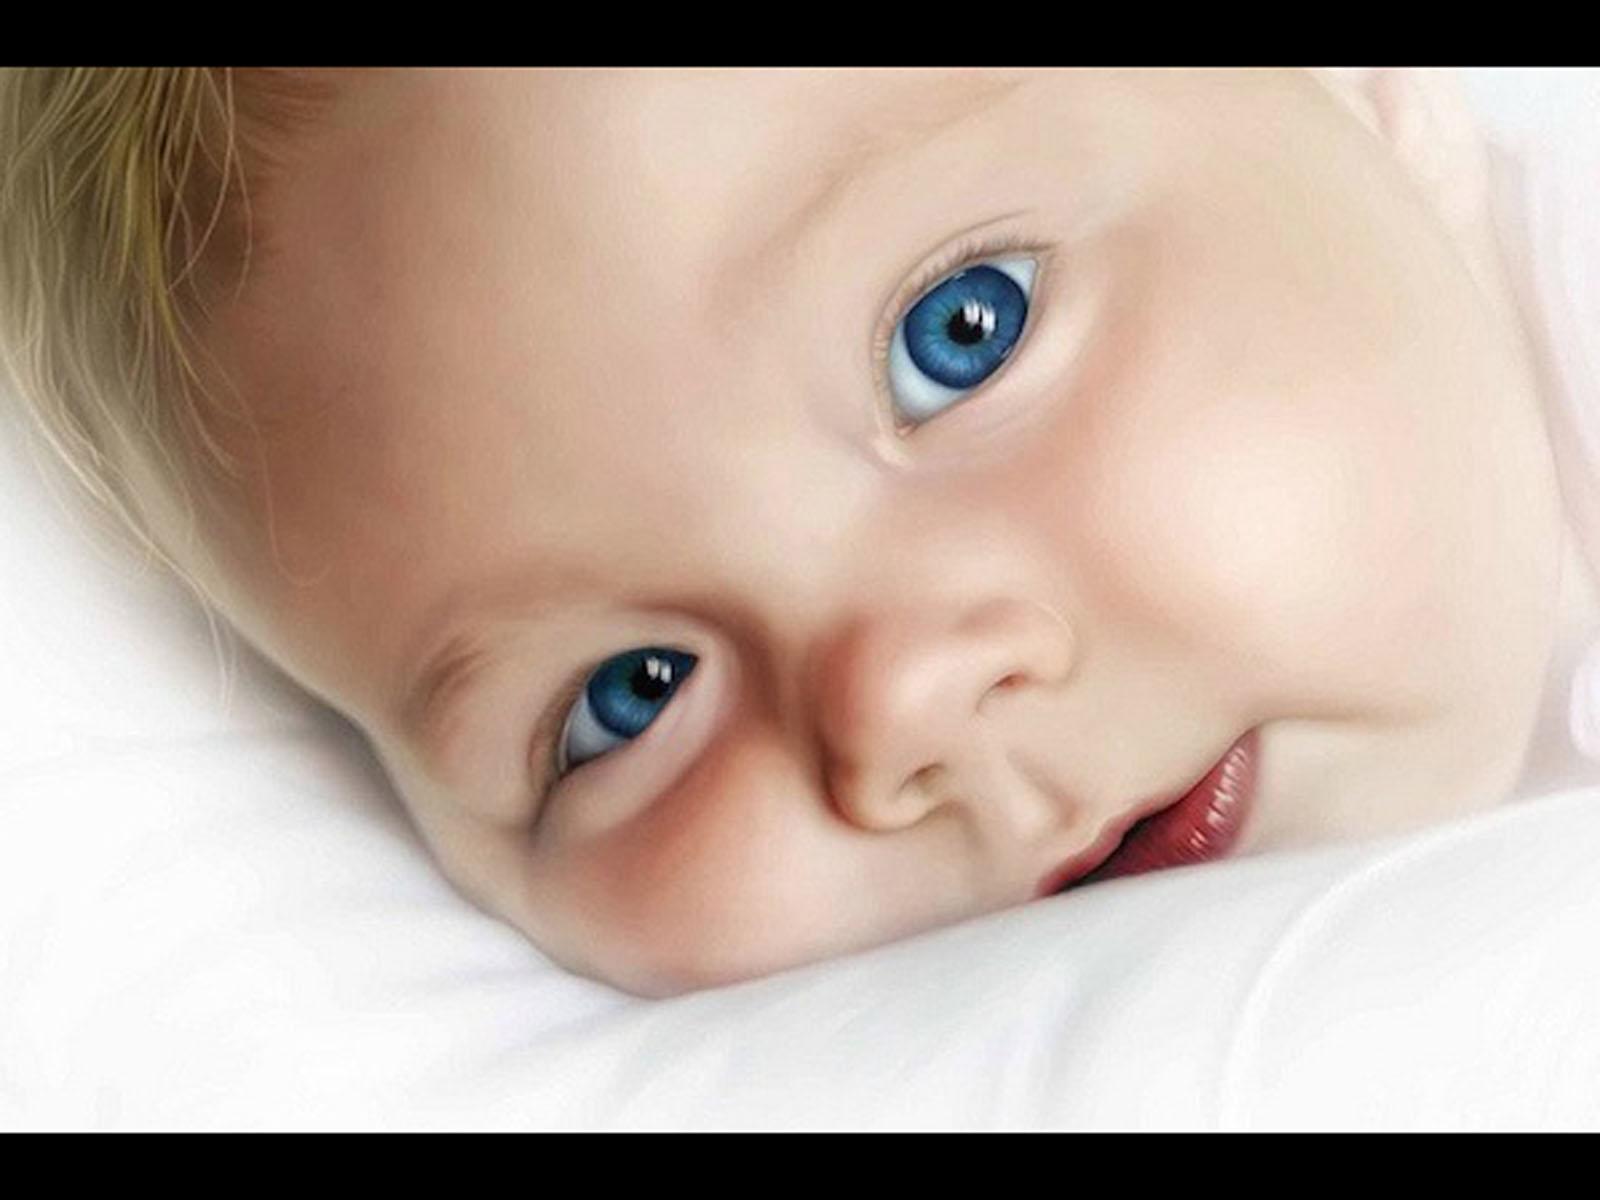 Upala sluznice oka je jedna od najčešćih infekcija kod novorođenčadi